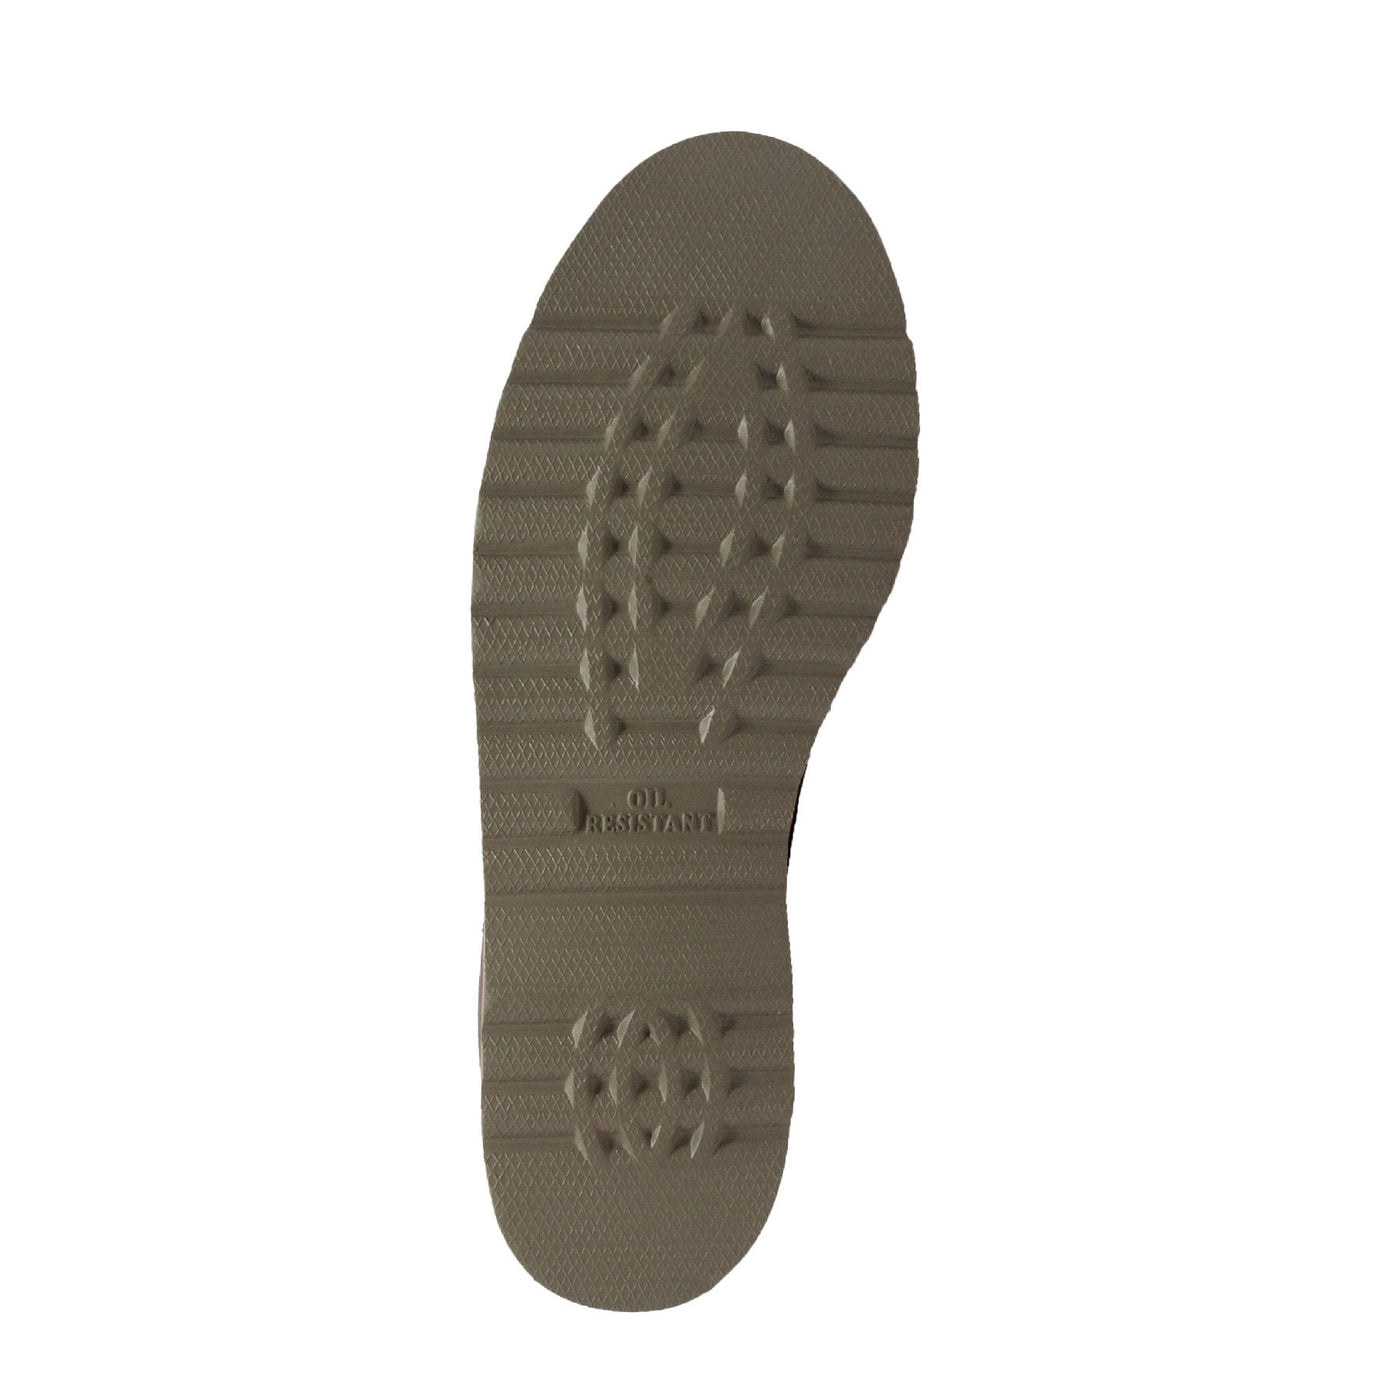 Men's 8" Redwood Farm Boot - 1311 - Shop Genuine Leather men & women's boots online | AdTecFootWear